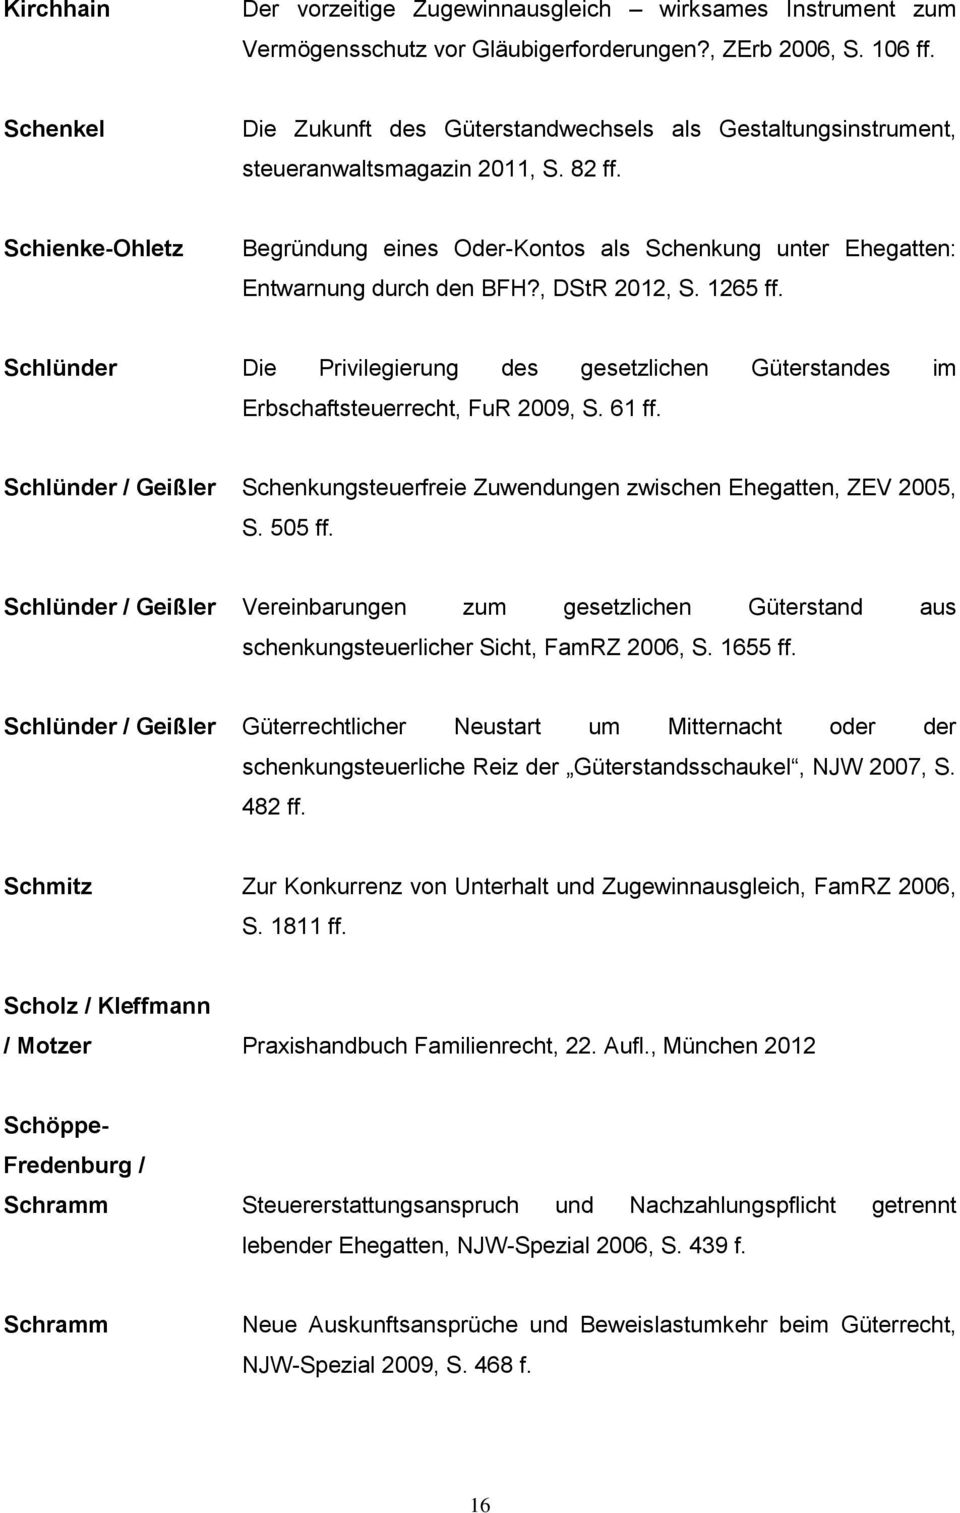 Schienke-Ohletz Begründung eines Oder-Kontos als Schenkung unter Ehegatten: Entwarnung durch den BFH?, DStR 2012, S. 1265 ff.